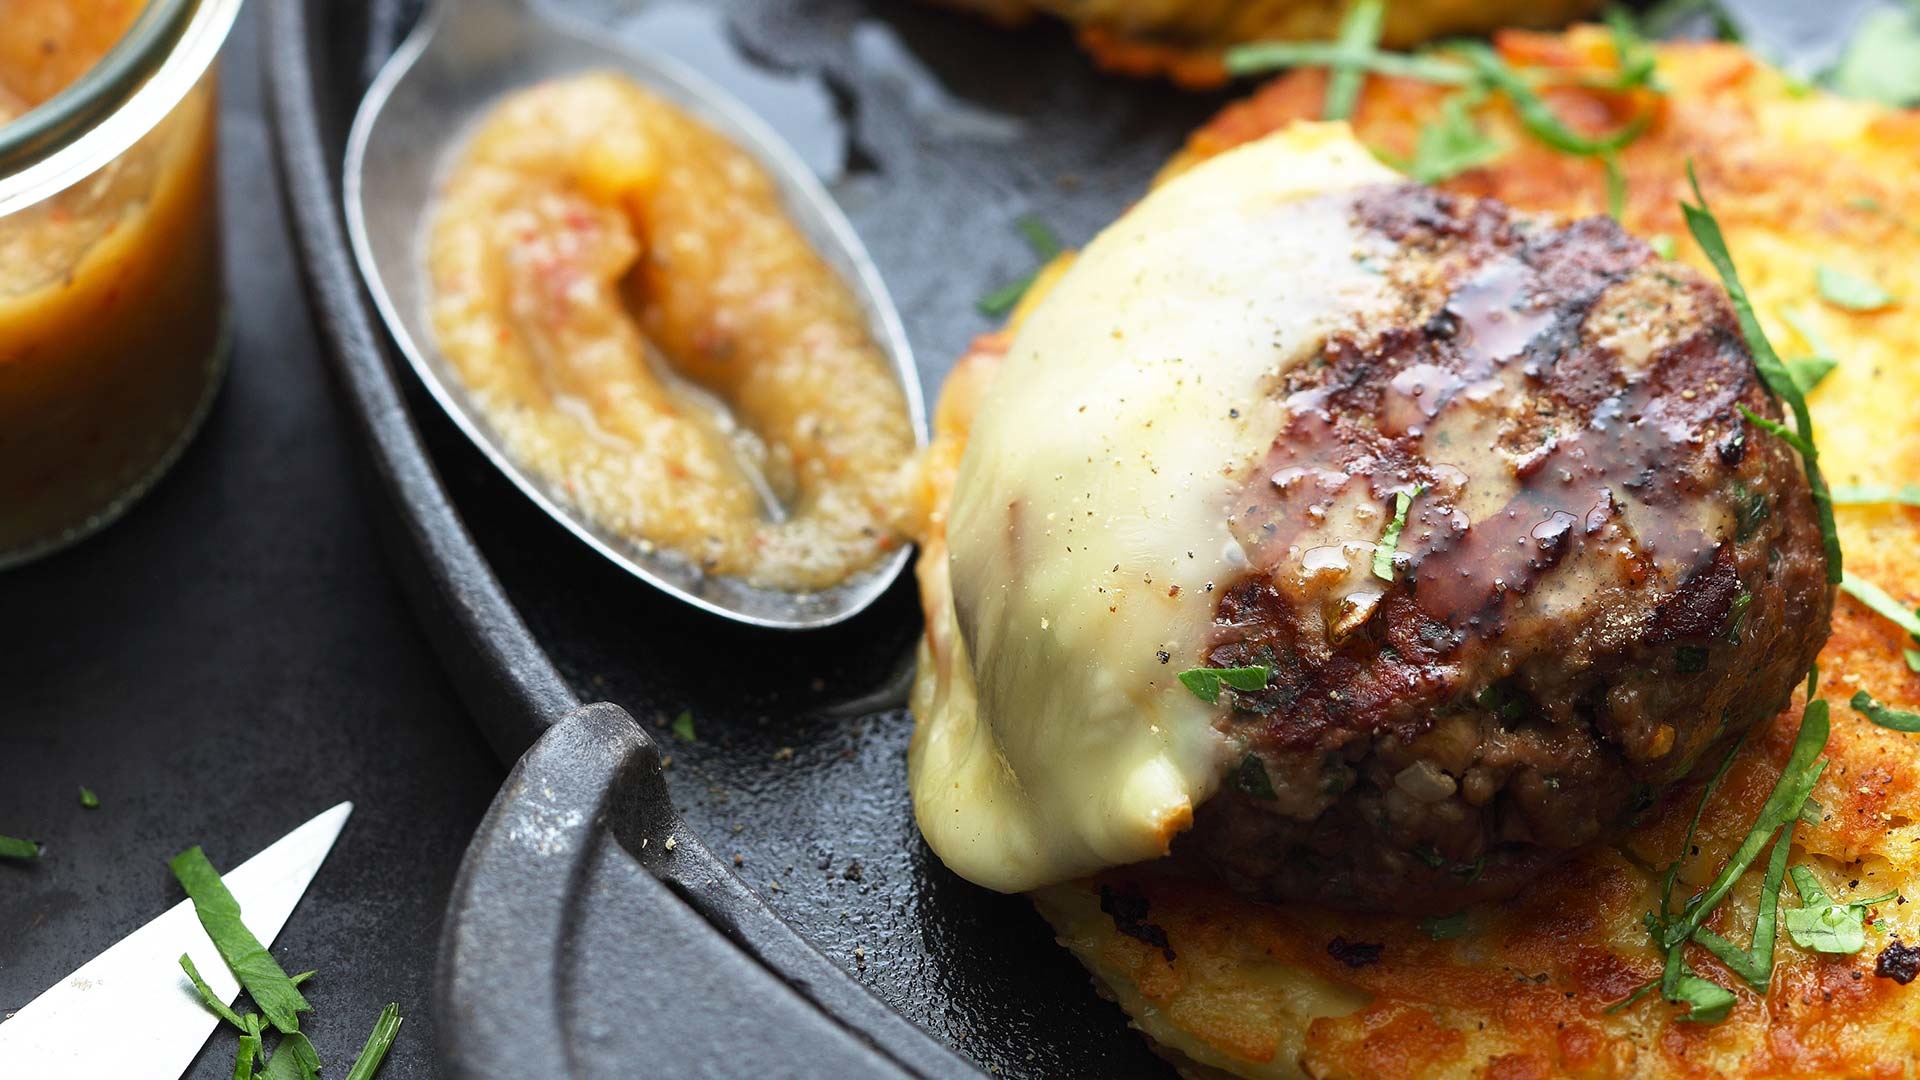  Aus dem Meat Special-Grillkurs - Kalbfleisch-Burger „Walliser Art“ mit Raclettekäse auf Bauernbrot mit Apfelsauce


